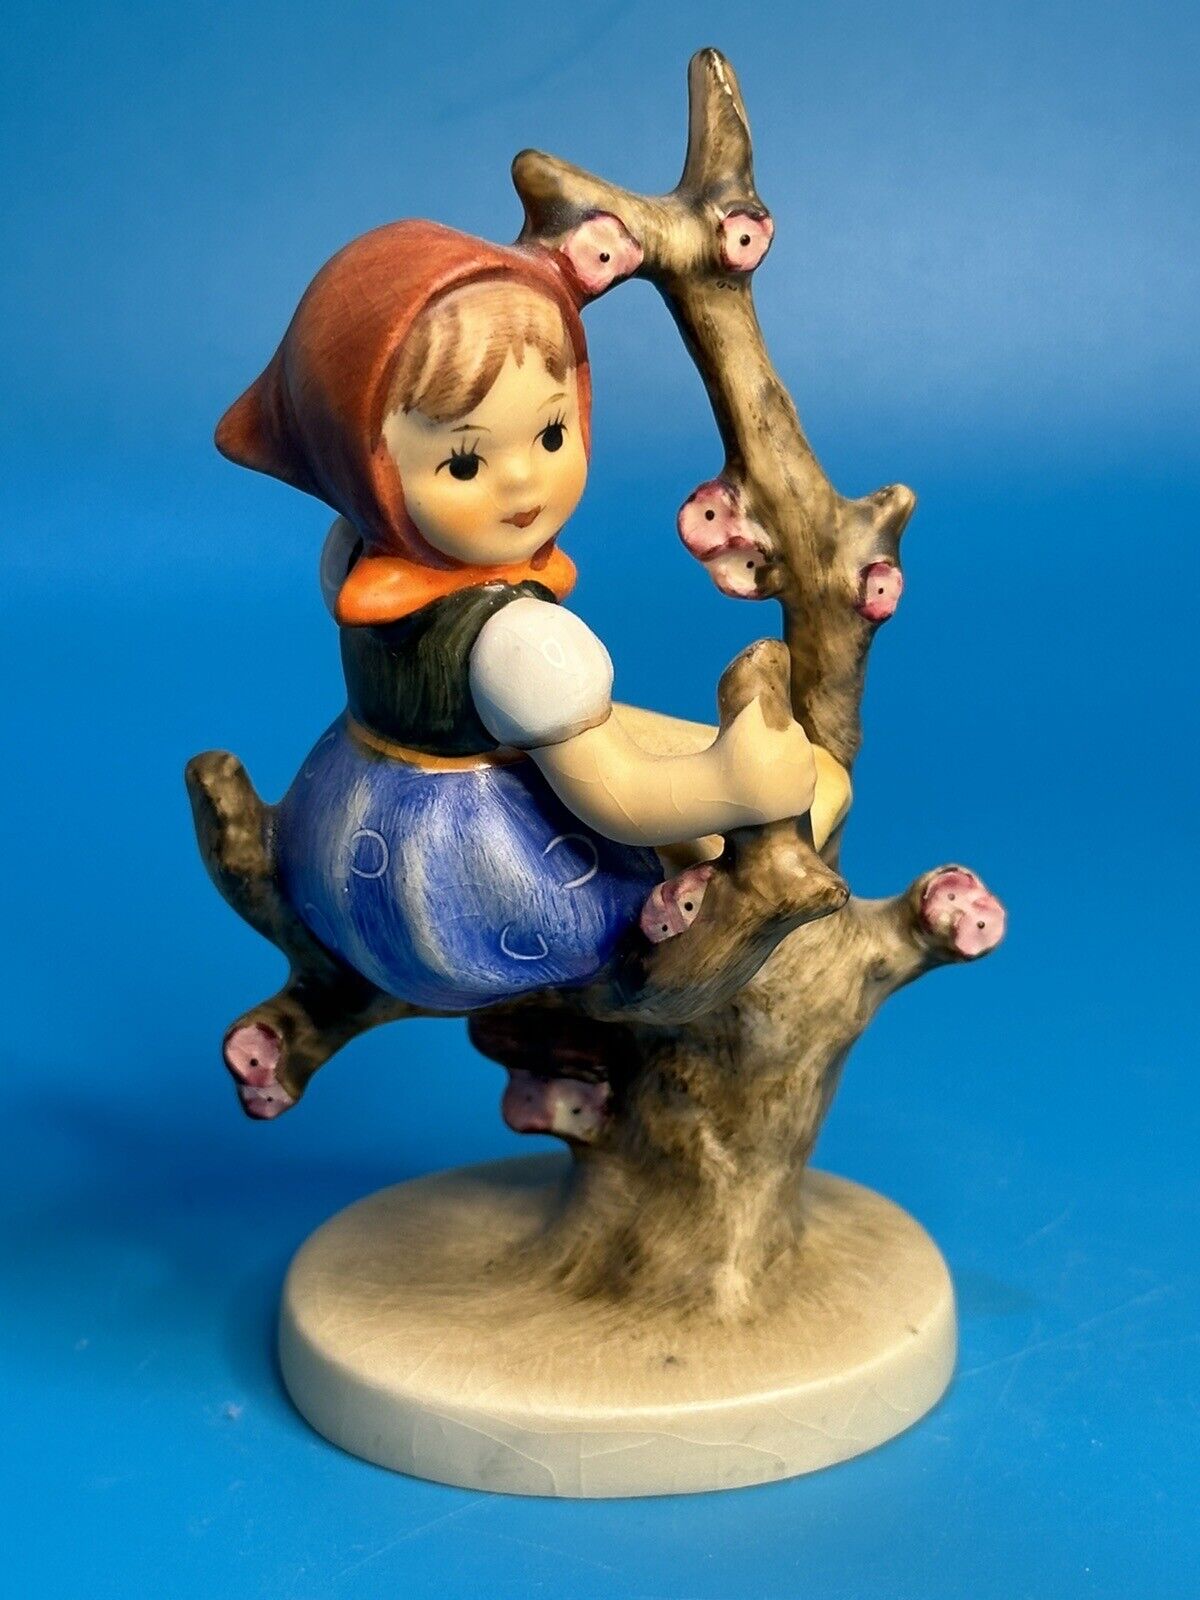 Vintage Goebel Hummel Figurine "Apple Tree Girl" Hum 141 3/0 TMK-3 West Germany